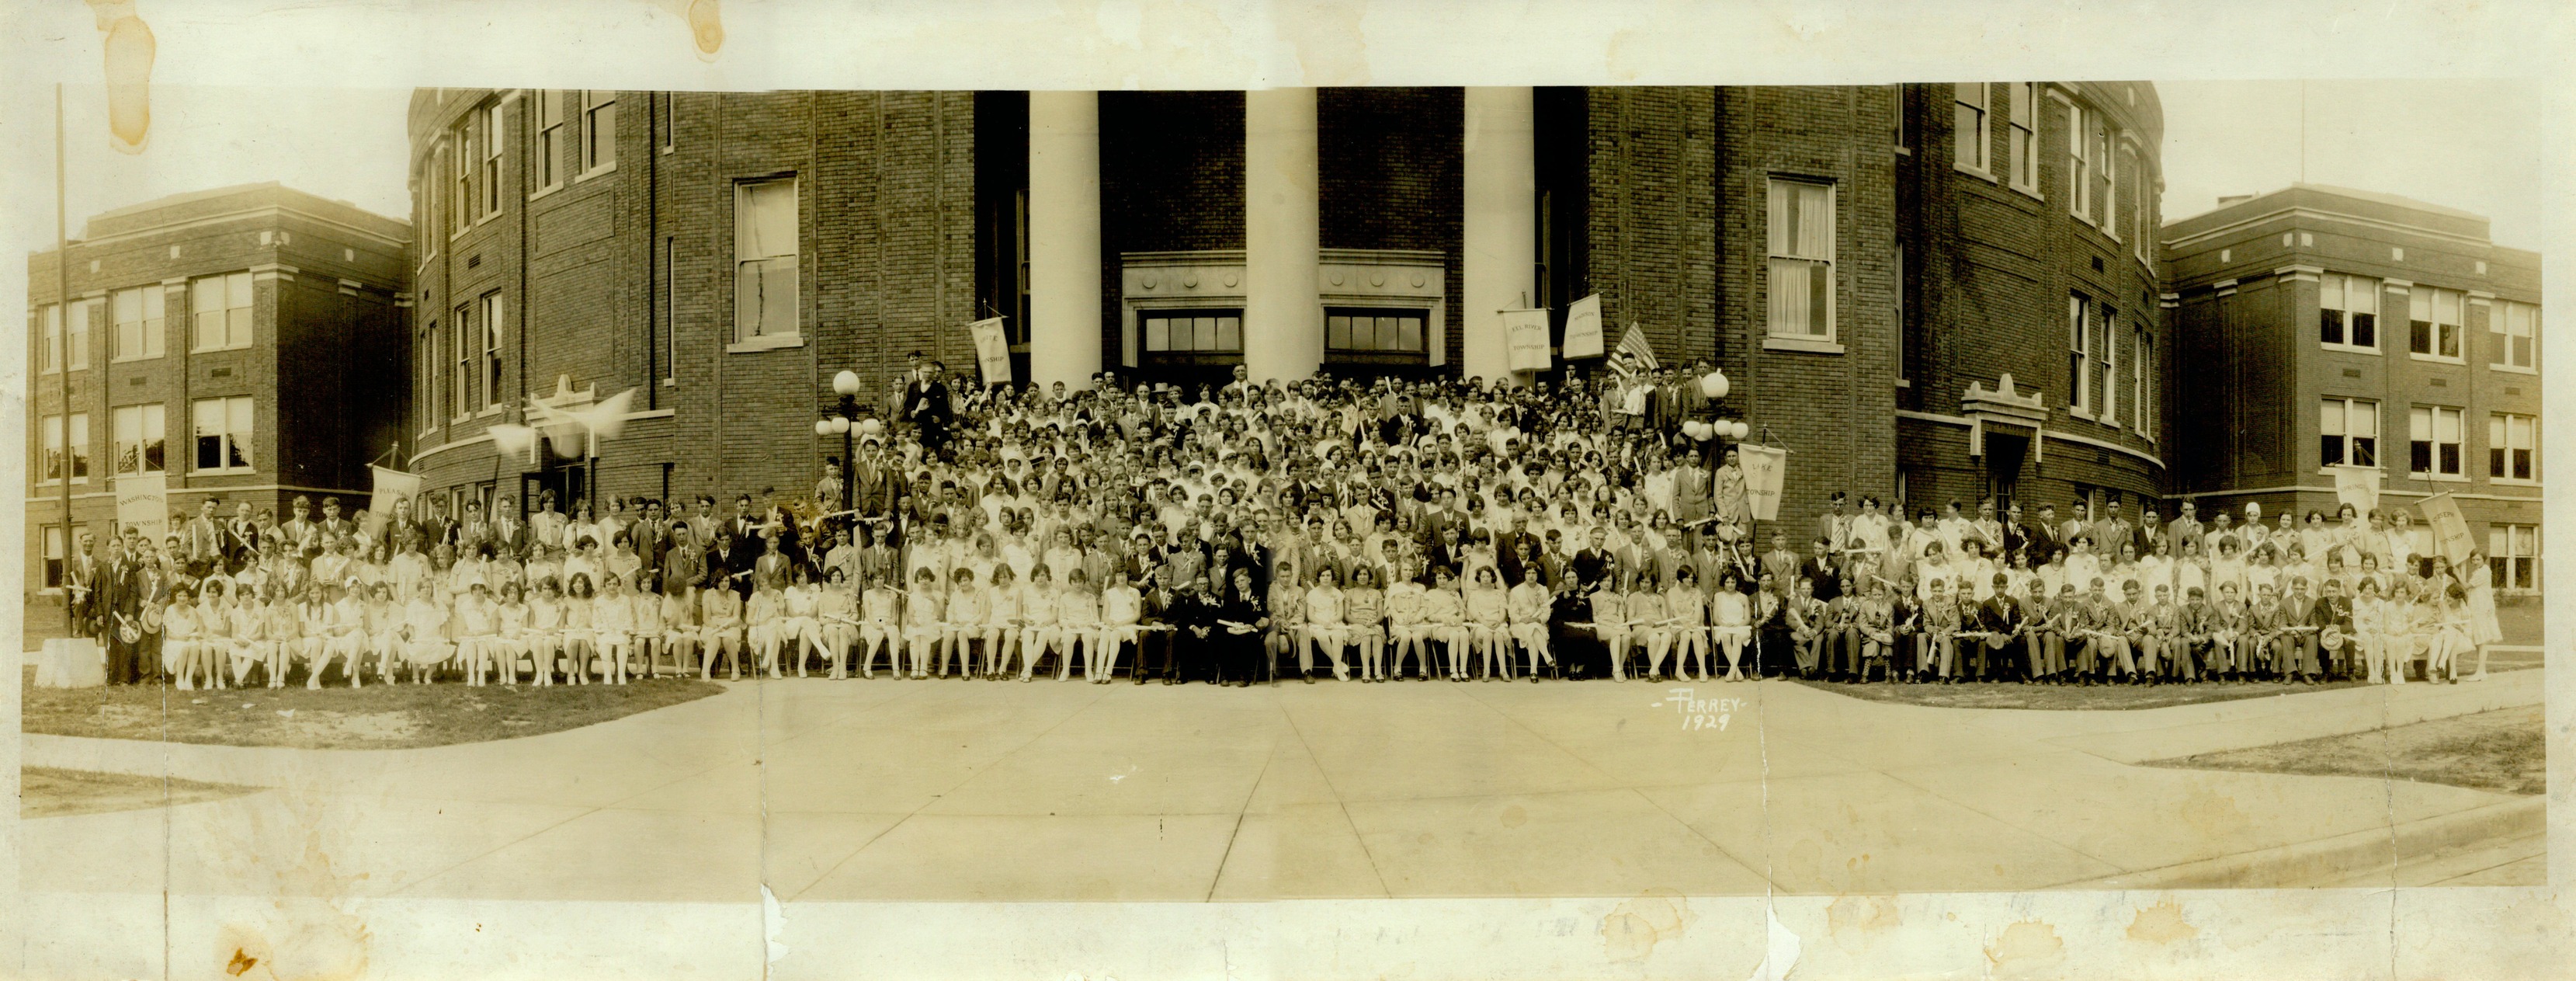 1929 North Side High School 